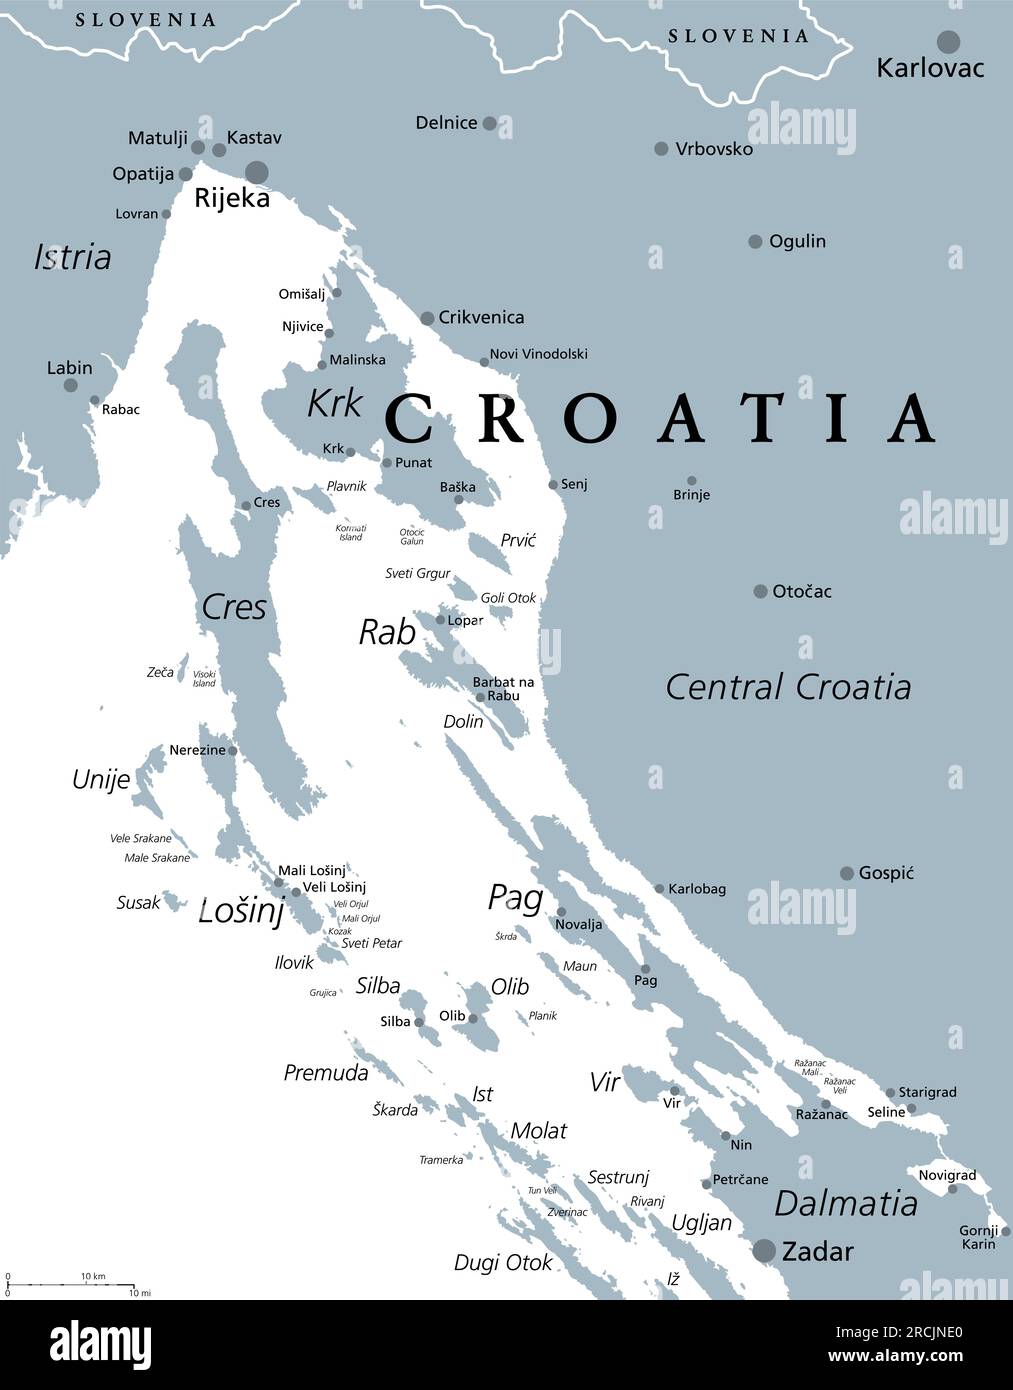 Golfo del Quarnero, parte delle acque interne della Croazia, mappa politica grigia. La baia del Quarnero nel Mare Adriatico settentrionale tra l'Istria e la Croazia centrale. Foto Stock